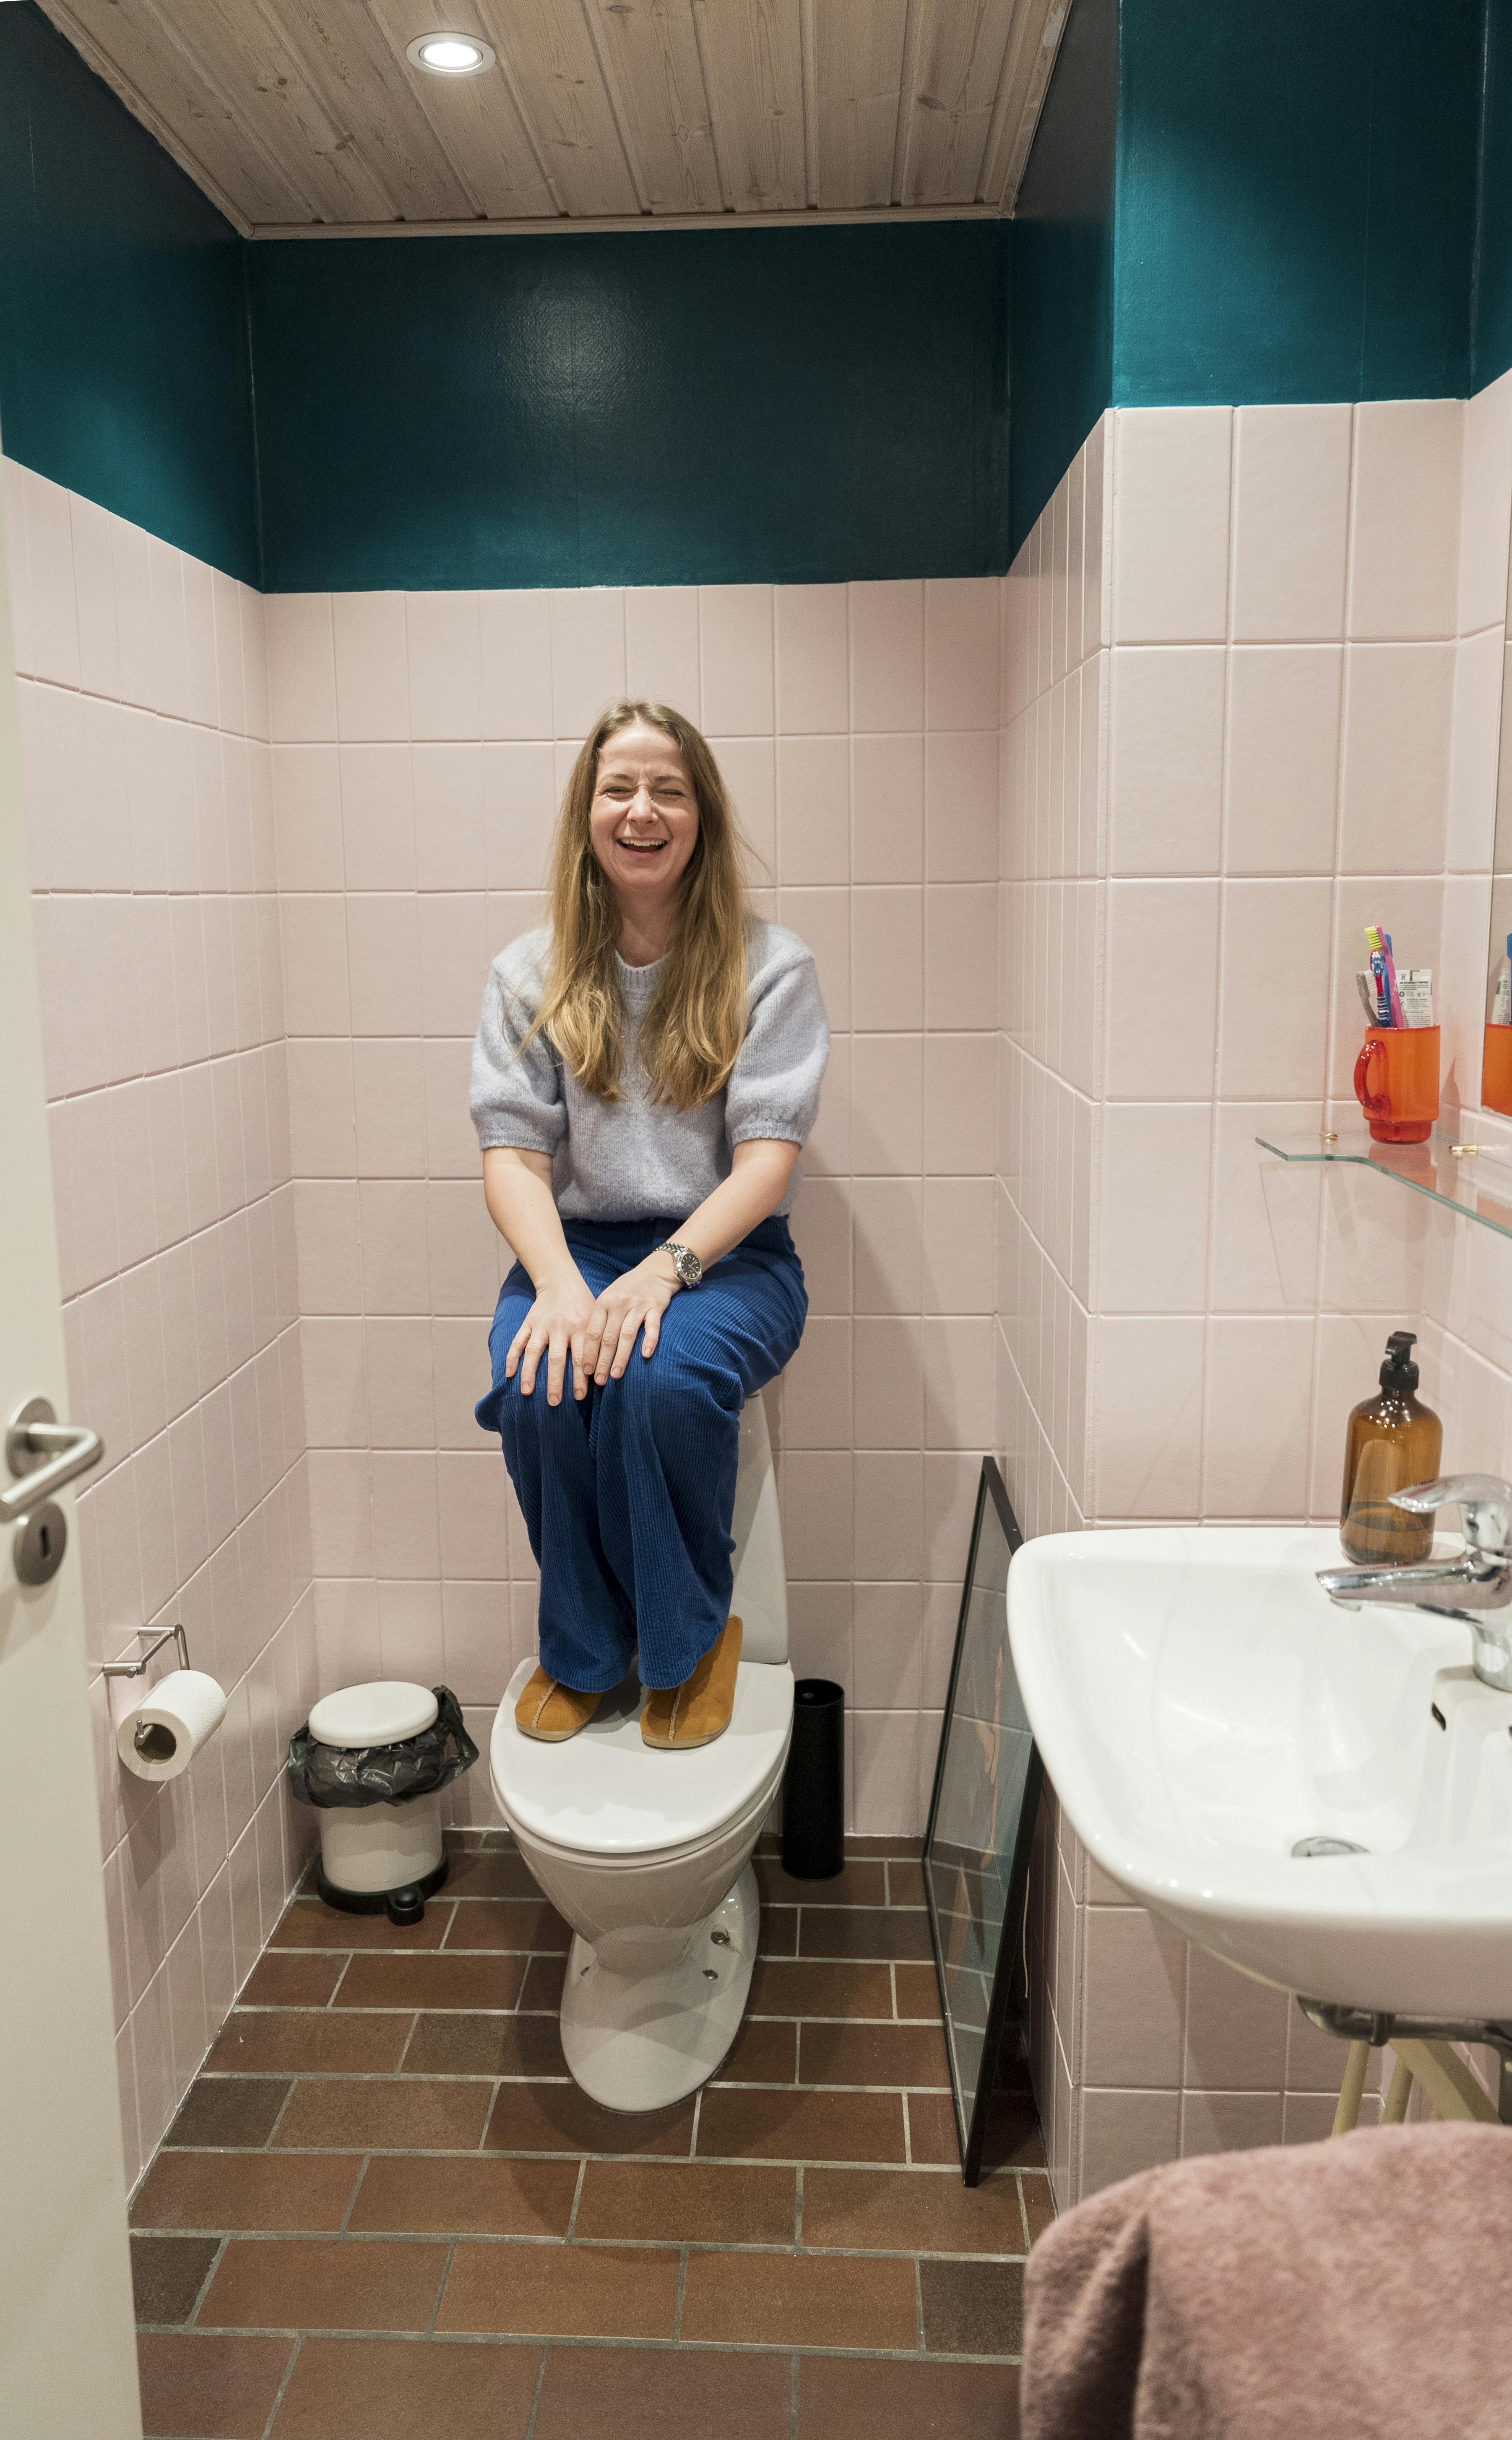 Ulla Vejbys humoristiske side fornægtede sig ikke, da Familie Journal besøgte hende i privaten i Kokkedal. Hun foreslog selv at blive fotograferet på toilettet. 